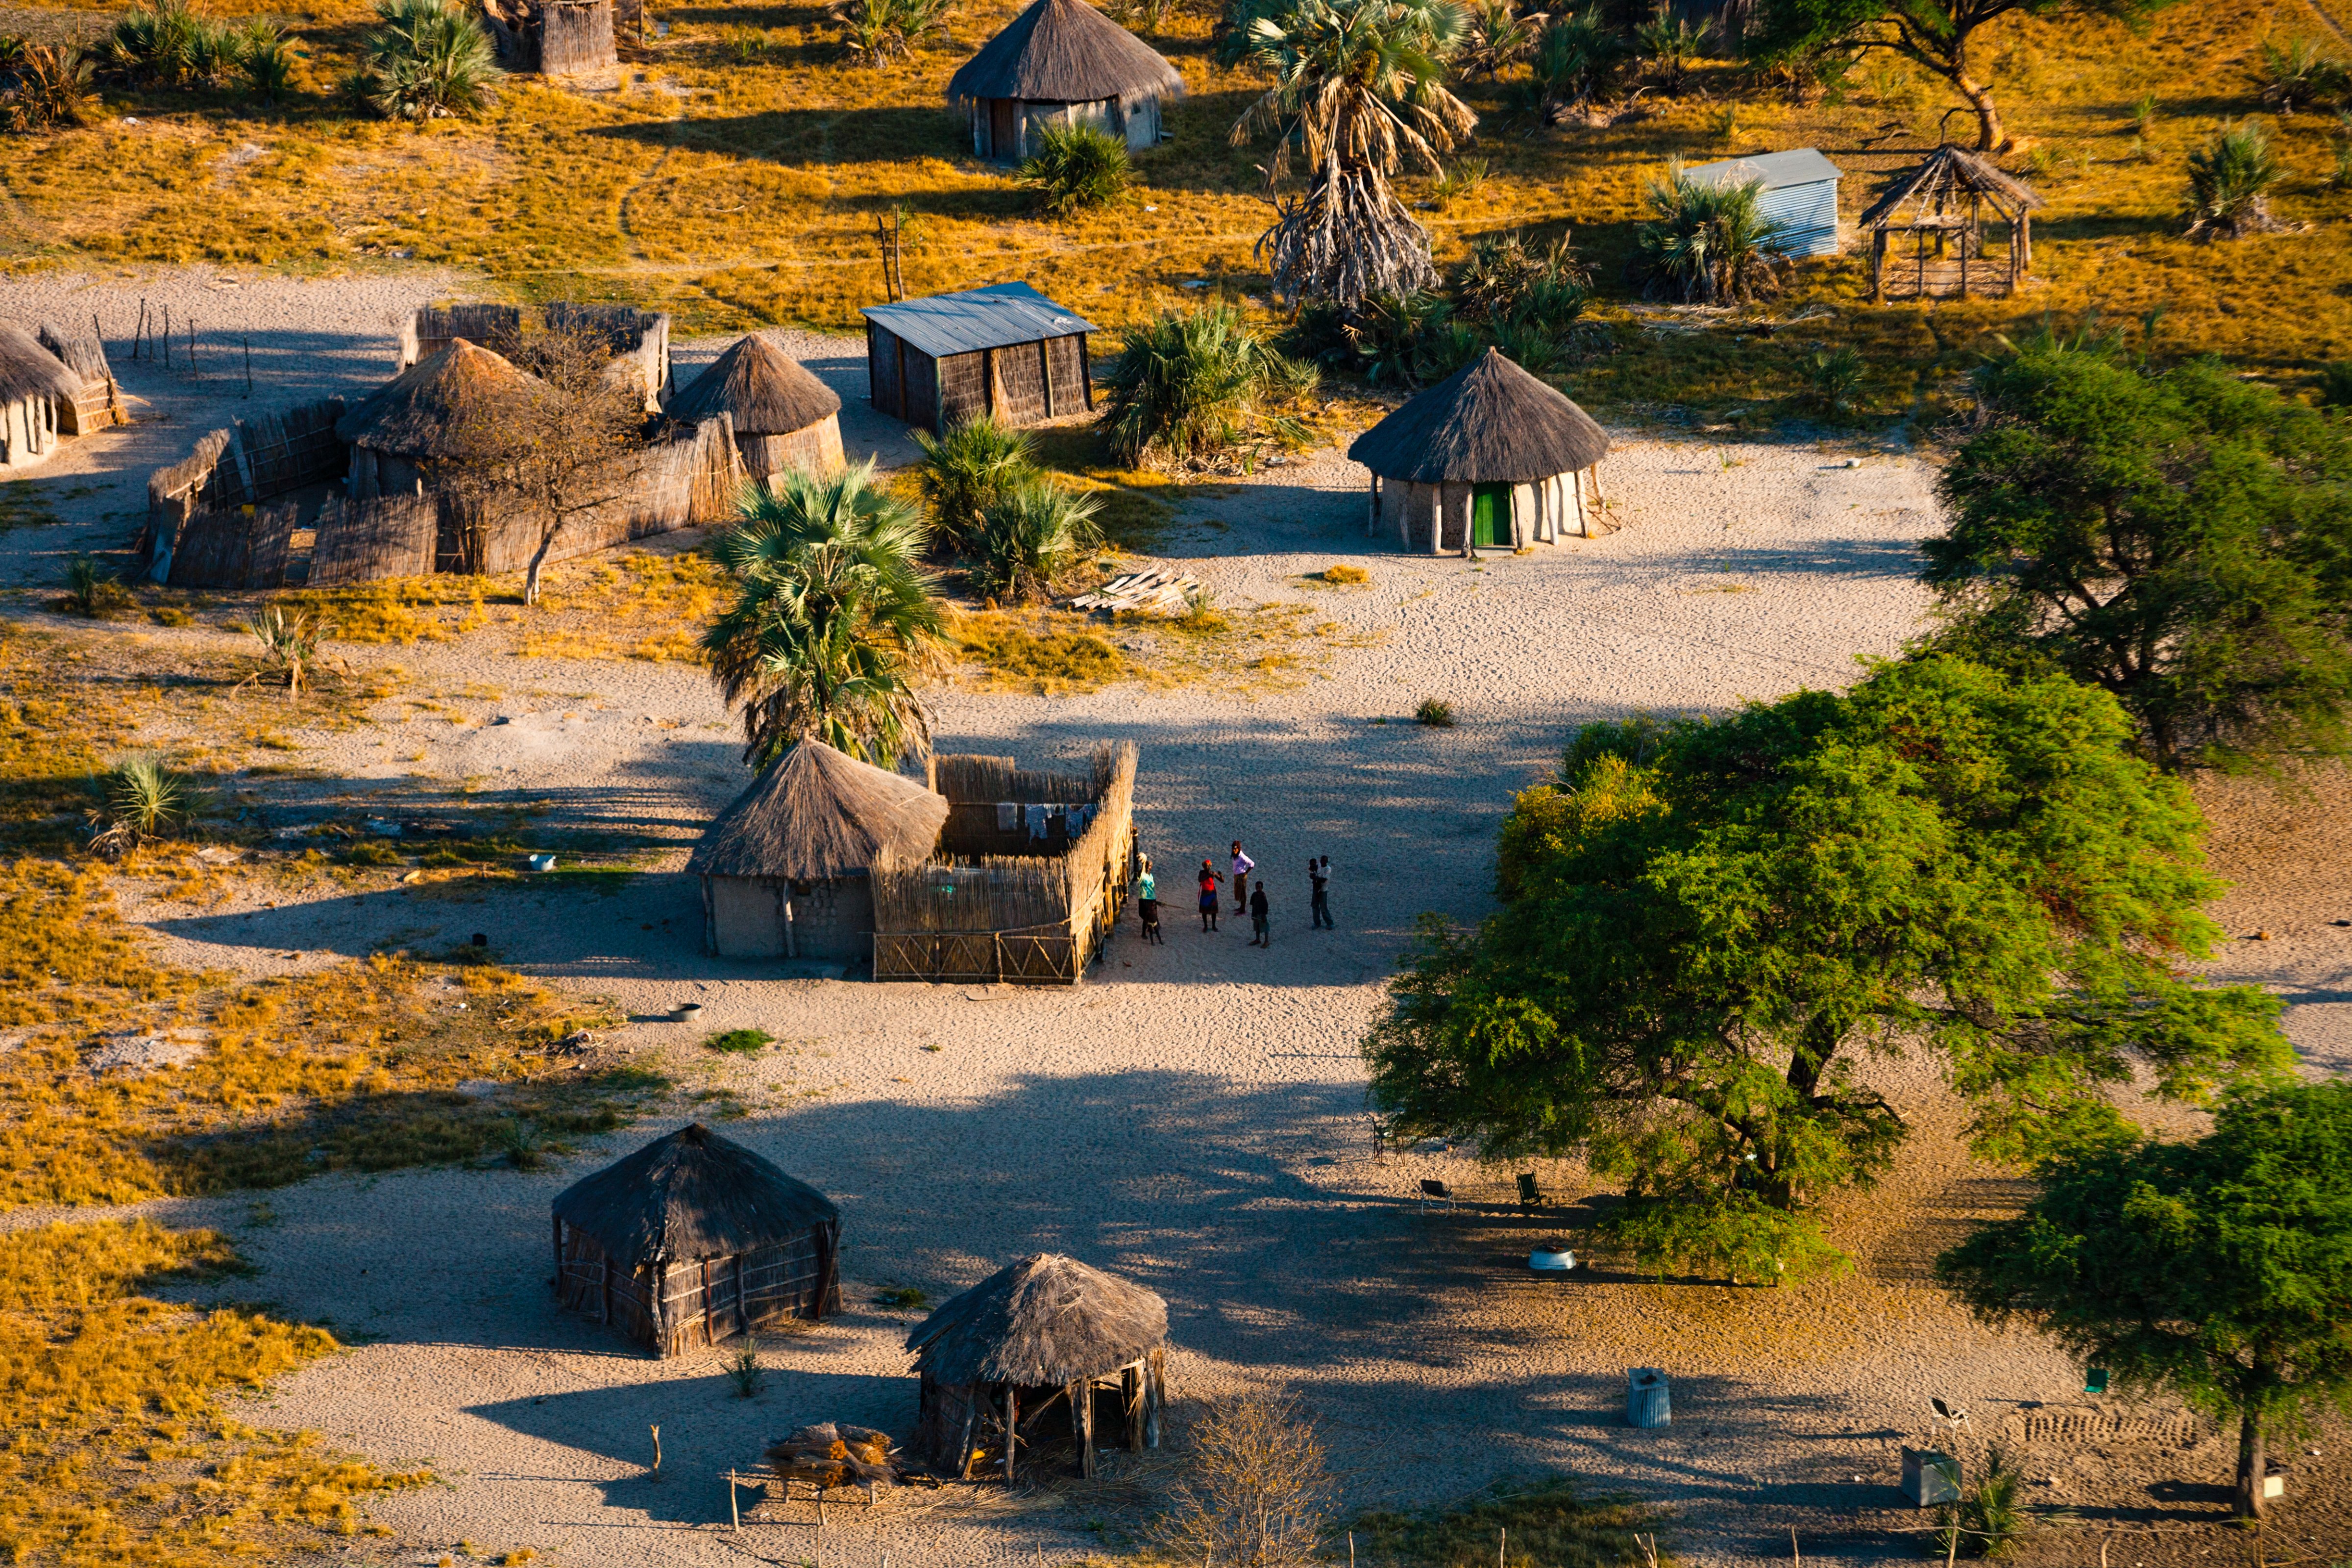 Village in the Okavango Delta, Botswana (Yann Arthus-Bertrand—Getty Images / Yann Arthus-Bertrand)